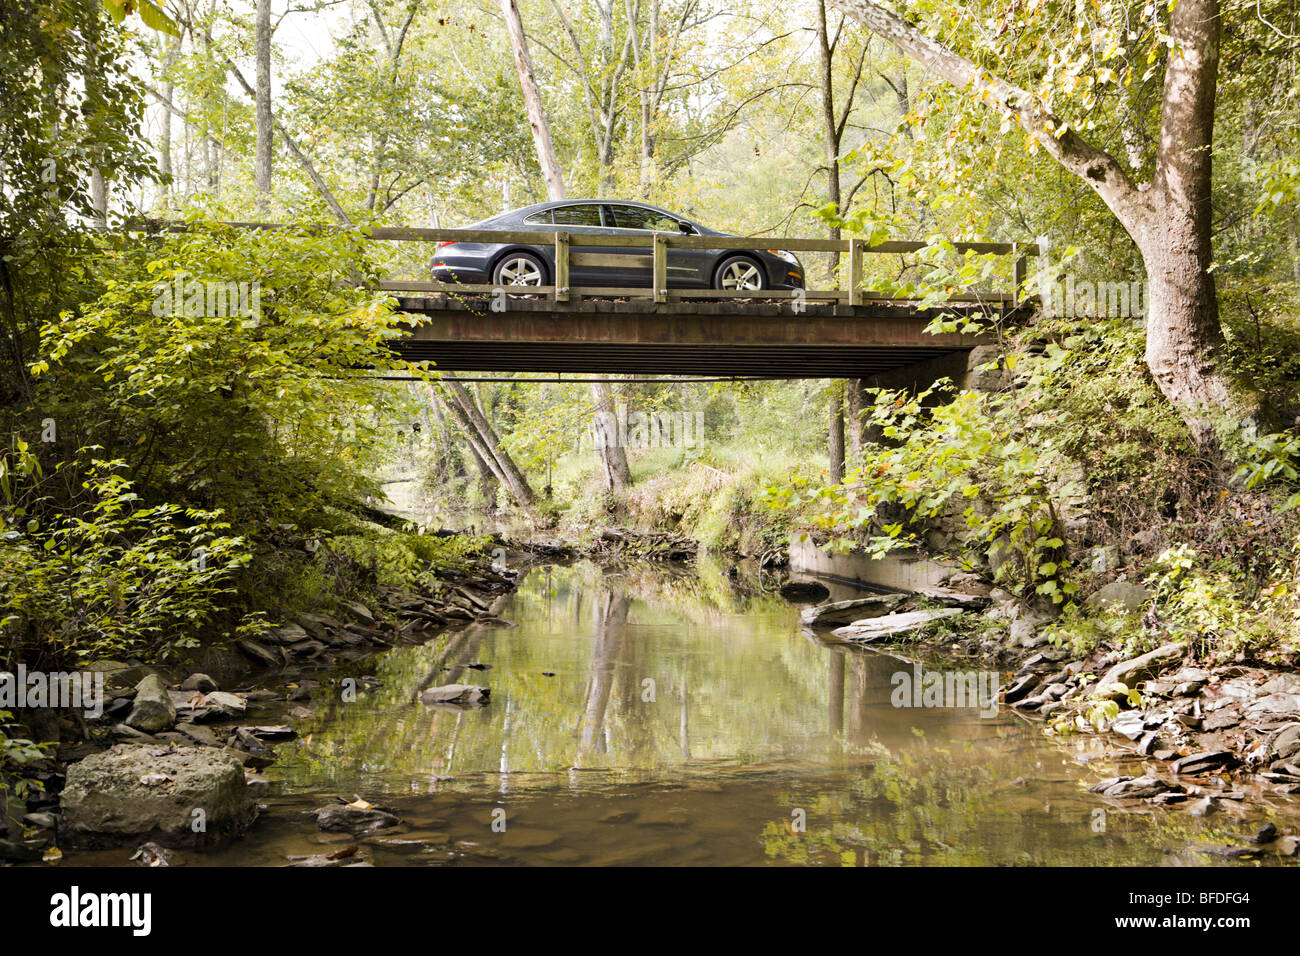 Un nuevo coche sobre un puente de madera en un paisaje forestal rural. Foto de stock